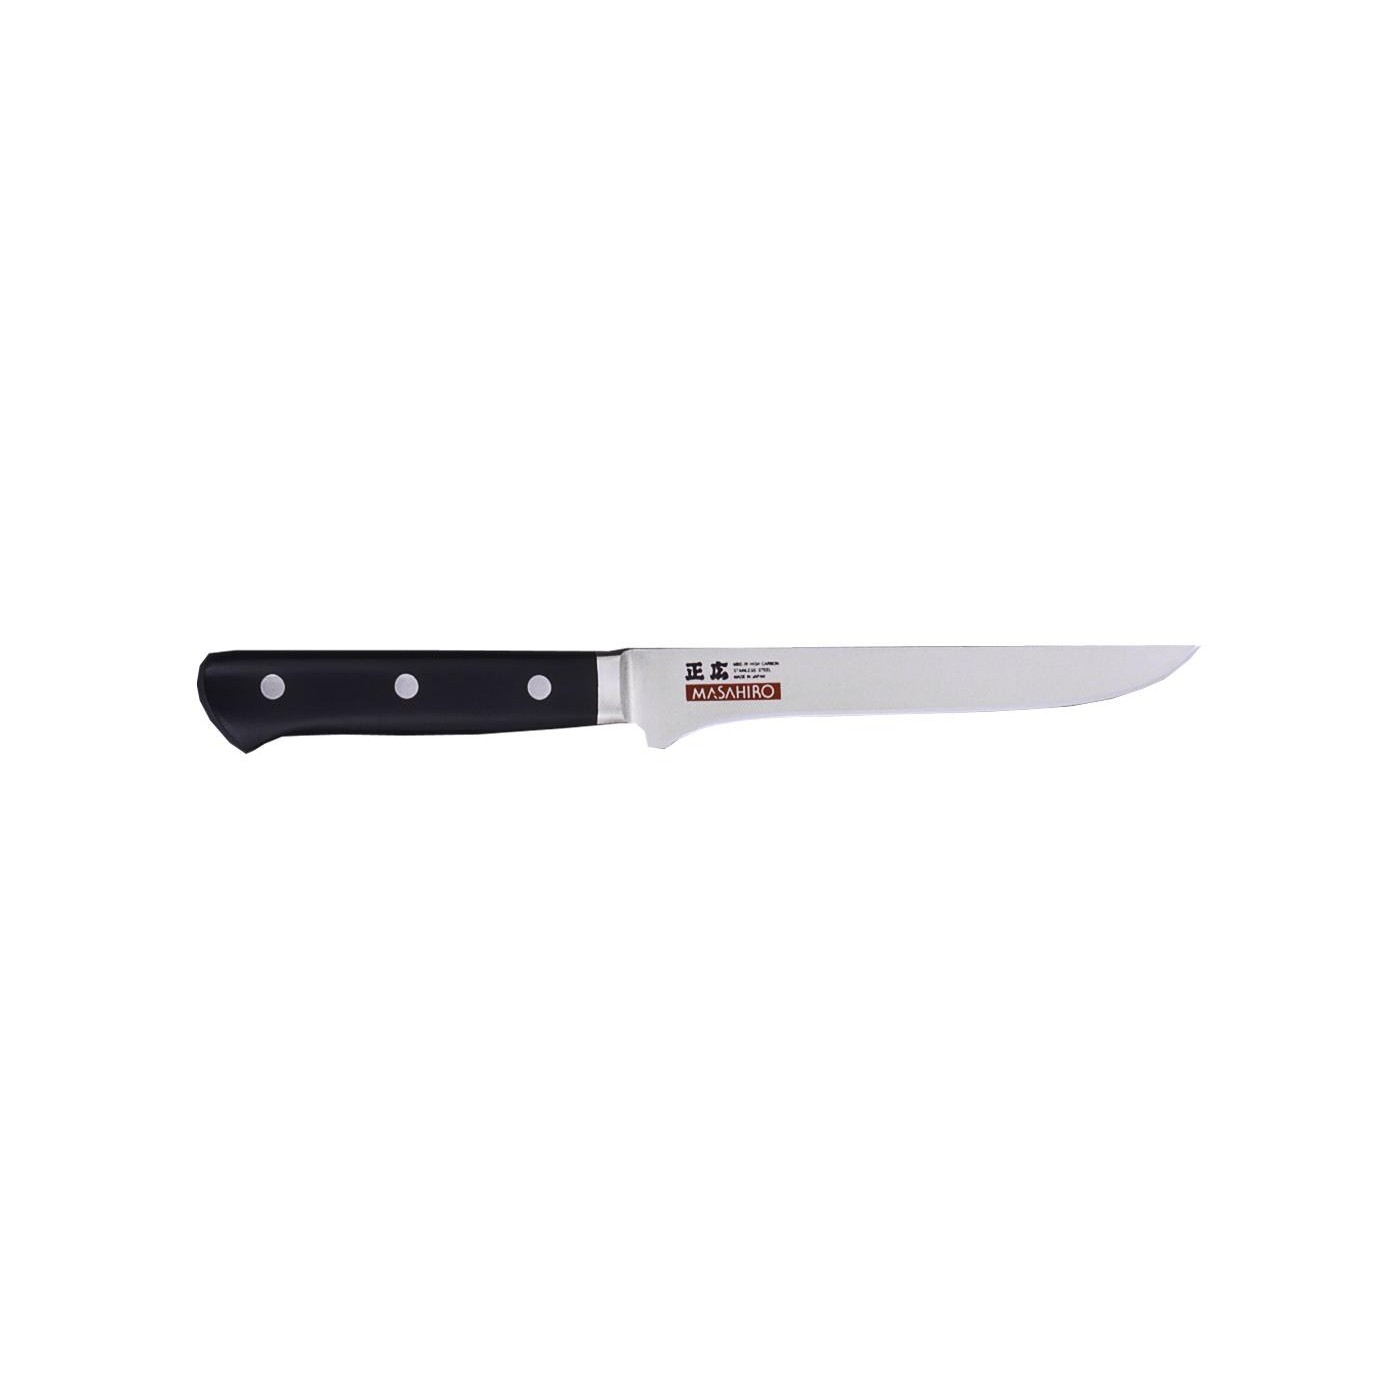 Couteau à désosser 16cm - Masahiro MBS26 M13